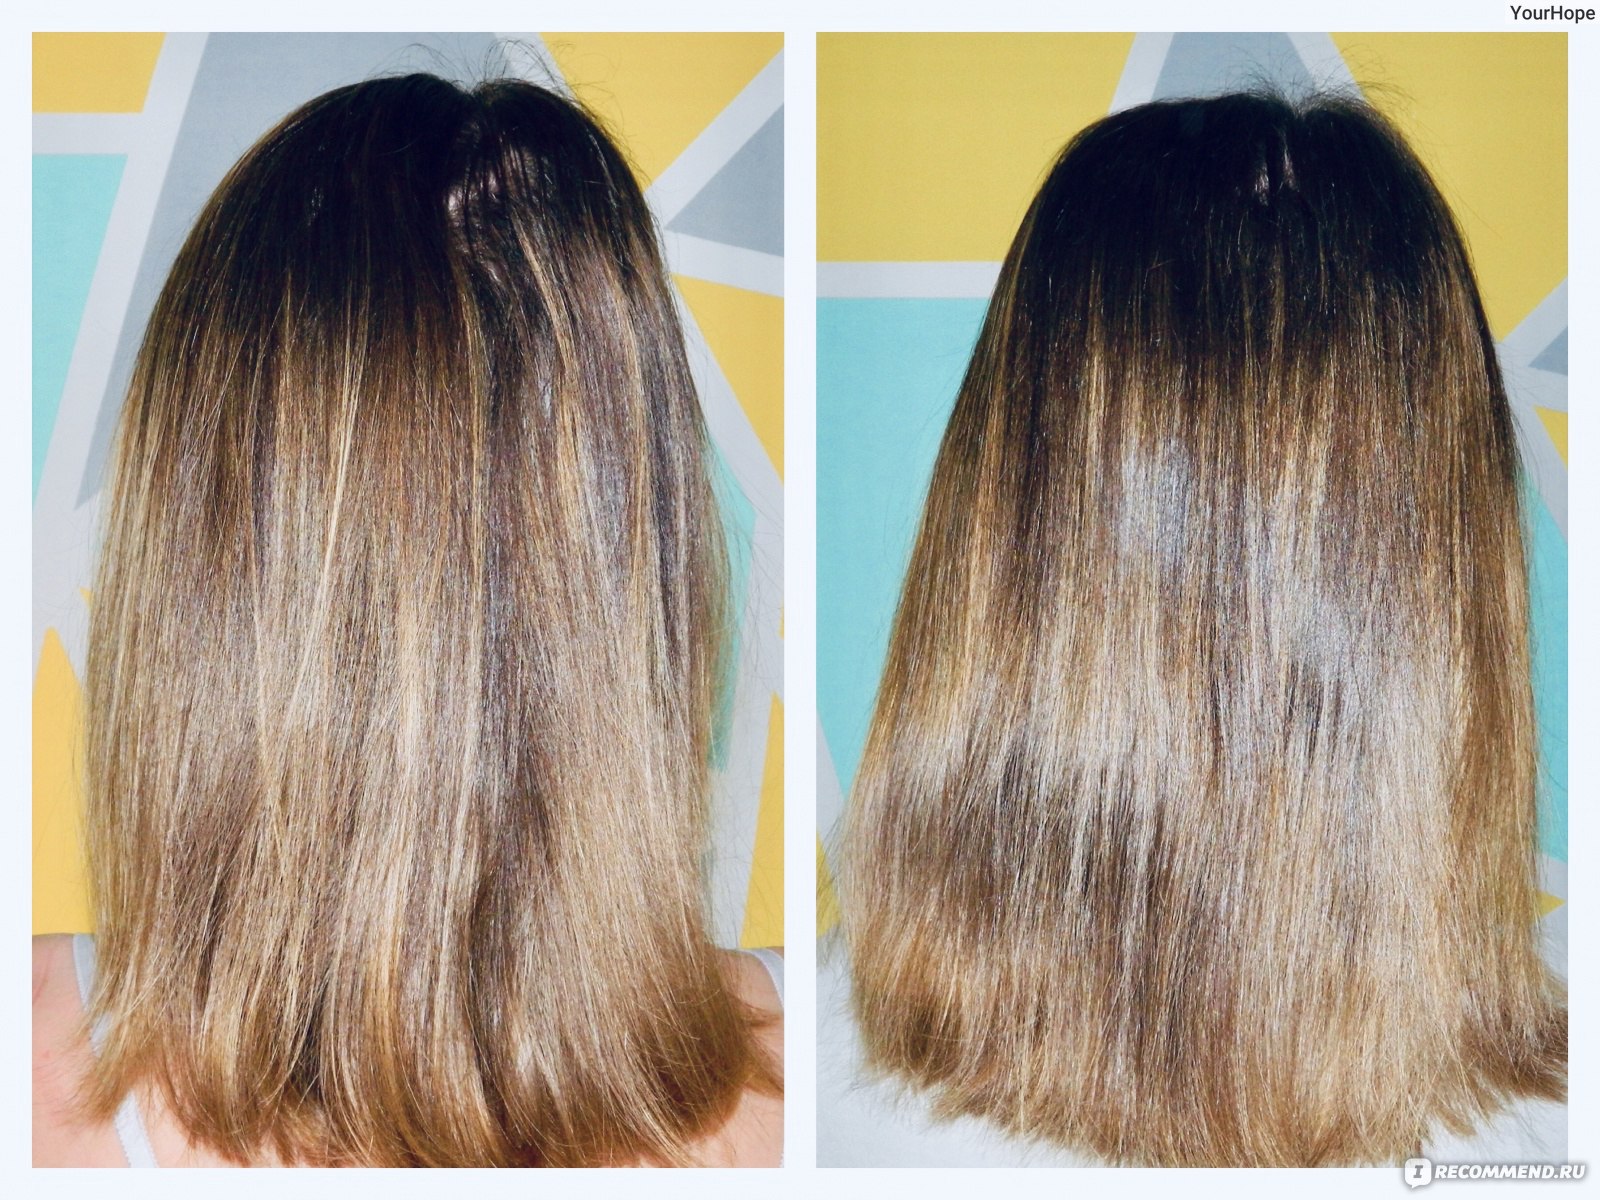 Касторовое масло для волос до и после